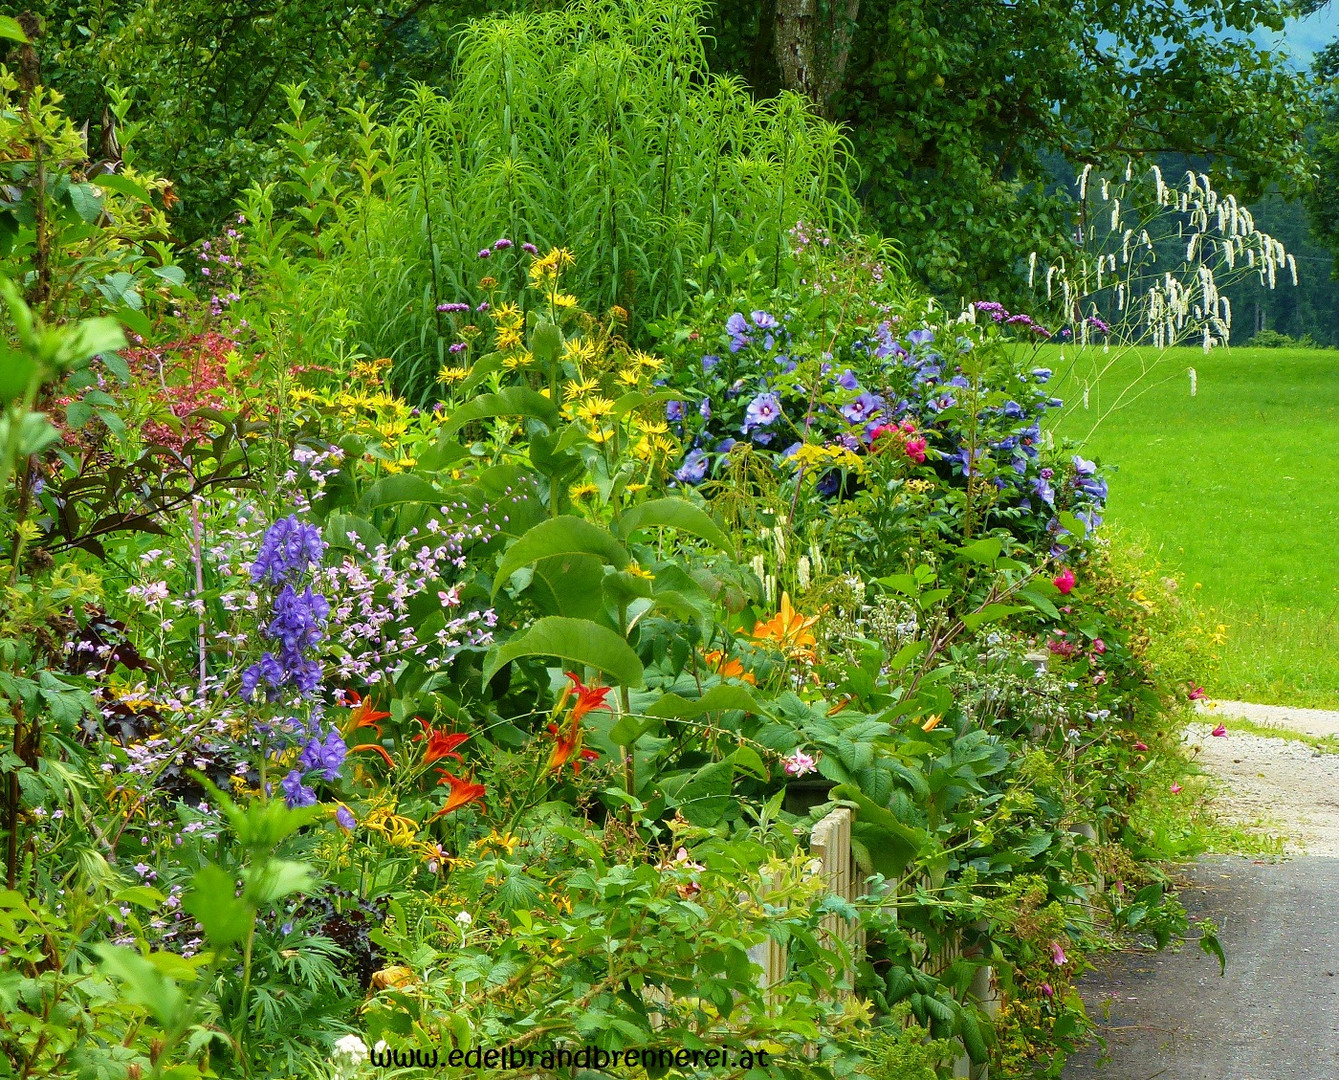 Kronbühel-Hof Garten in Schwoich mit Sanguisorba tenuifolia und Hibiscus "Blue Bird"